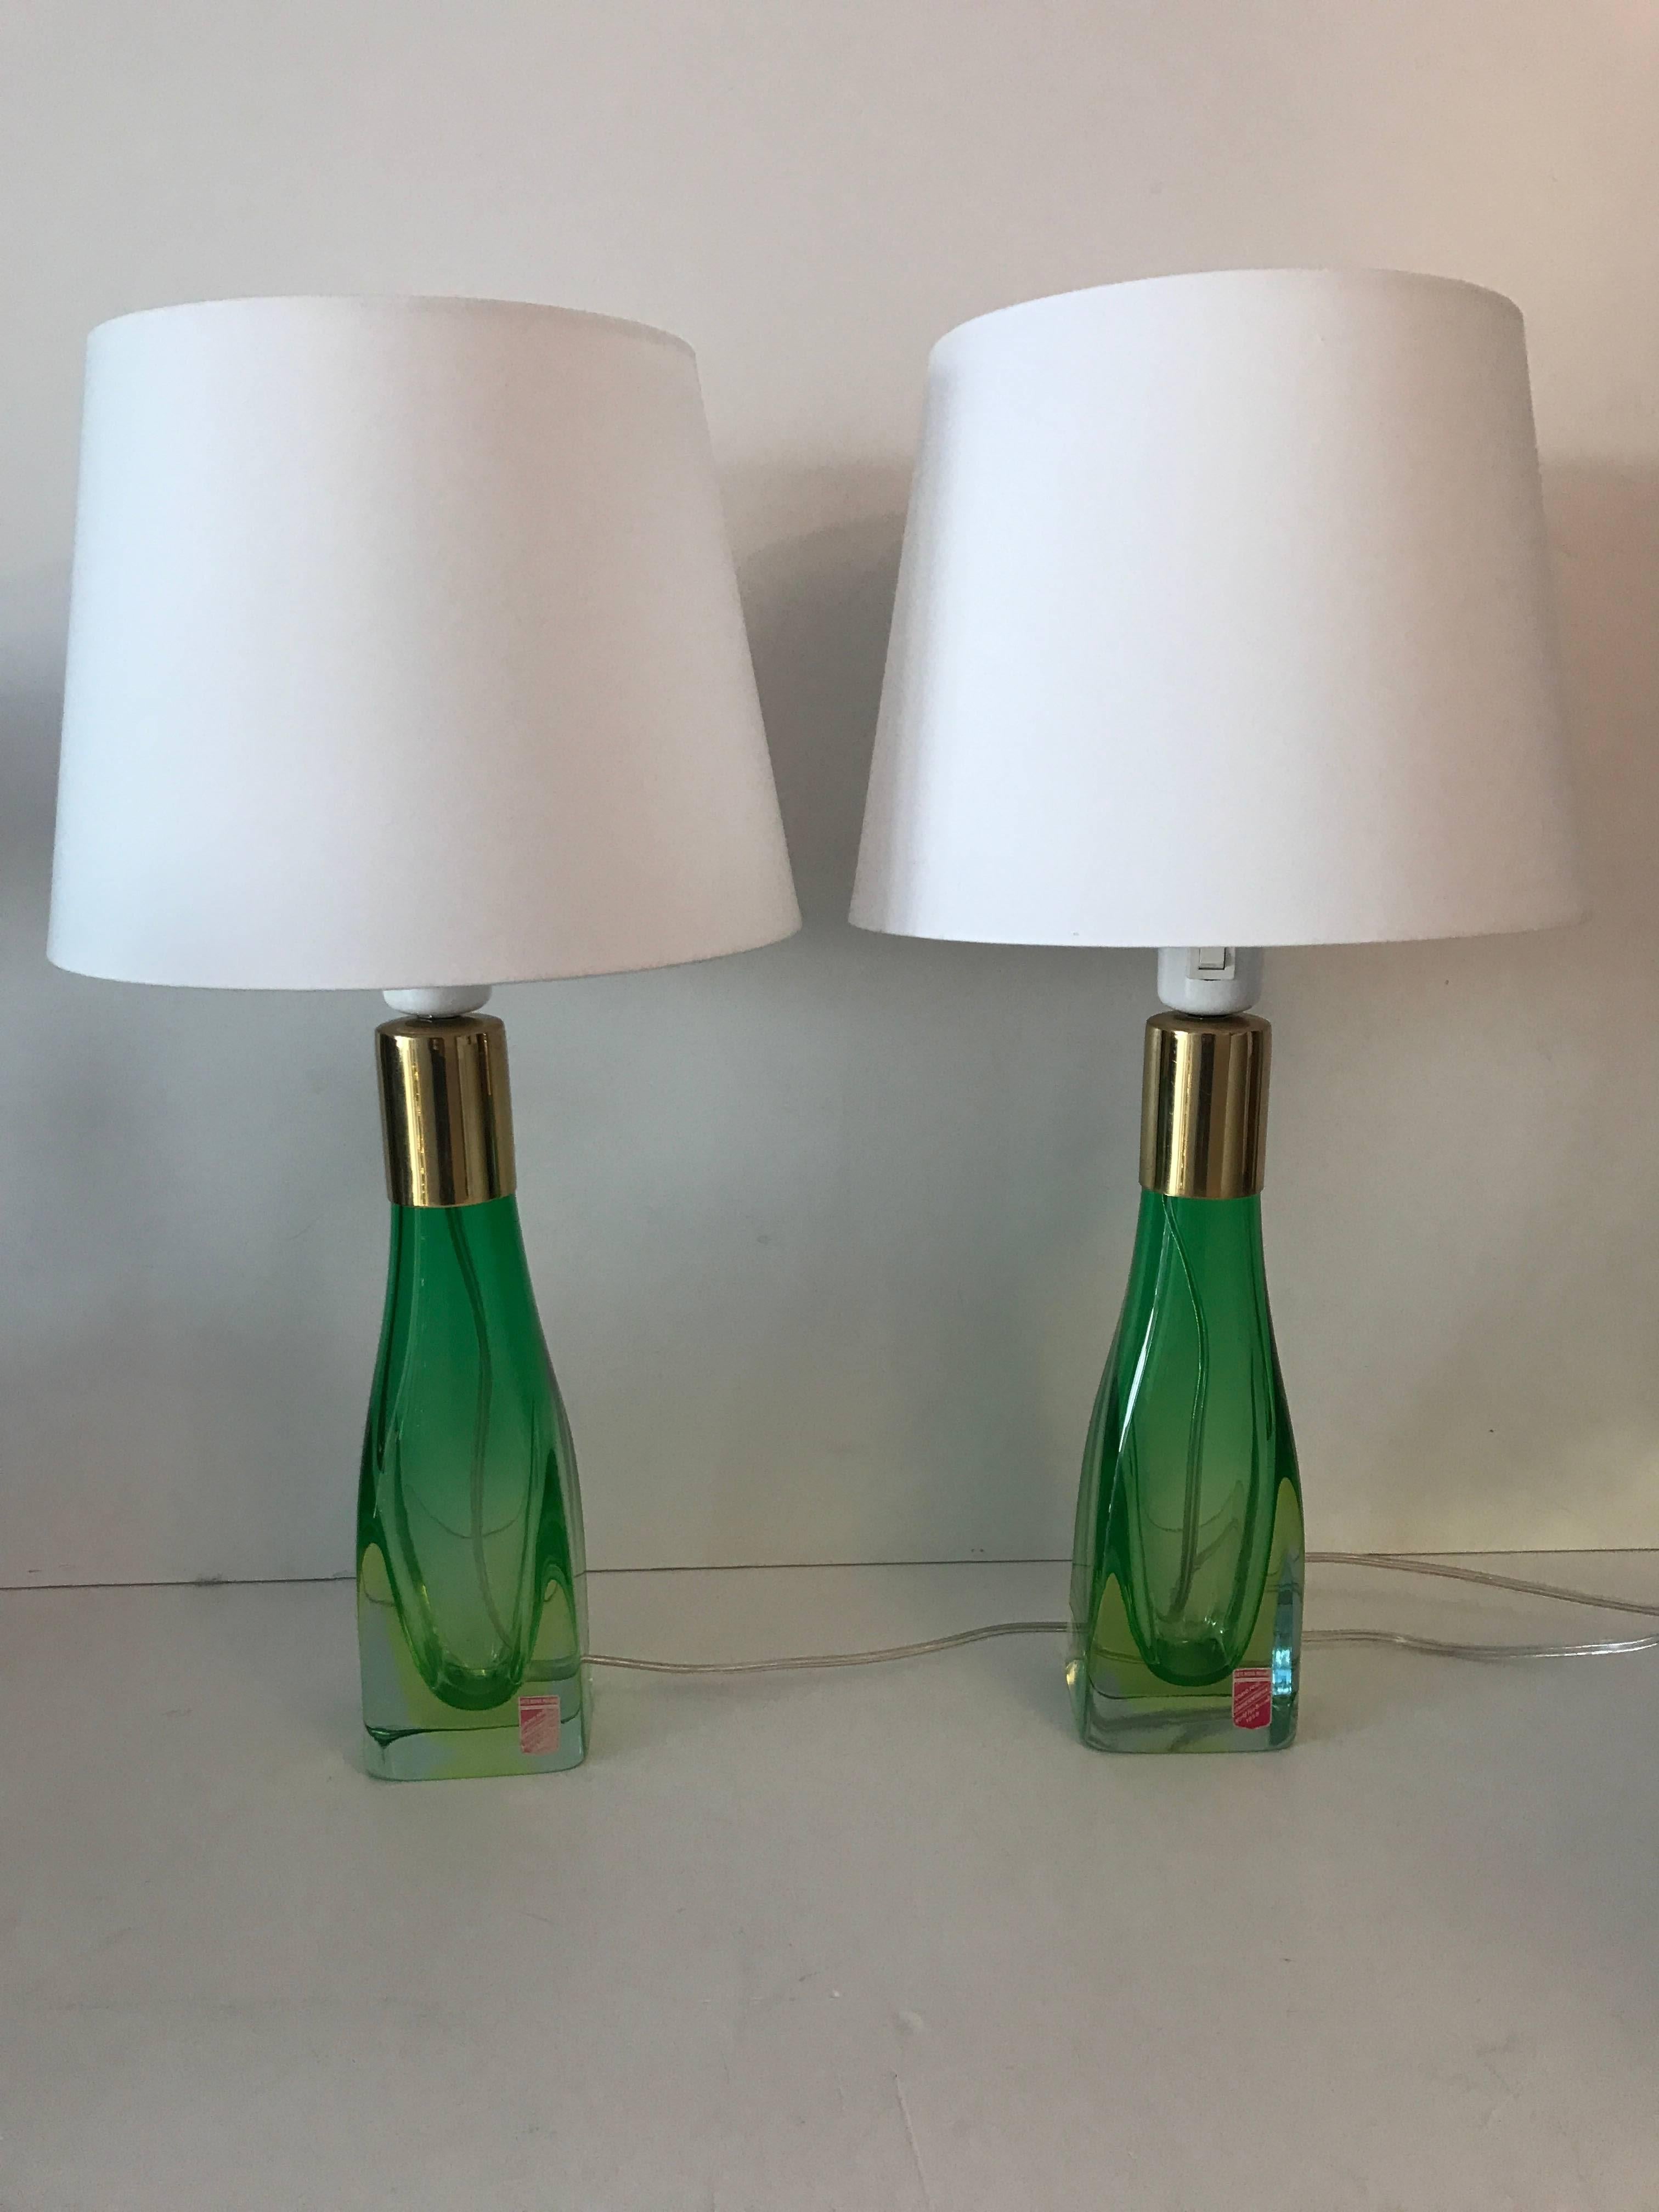 Pair of Italian Venetian Murano Art Glass Table Lamps 1958 Arte Nuova, Murano 4